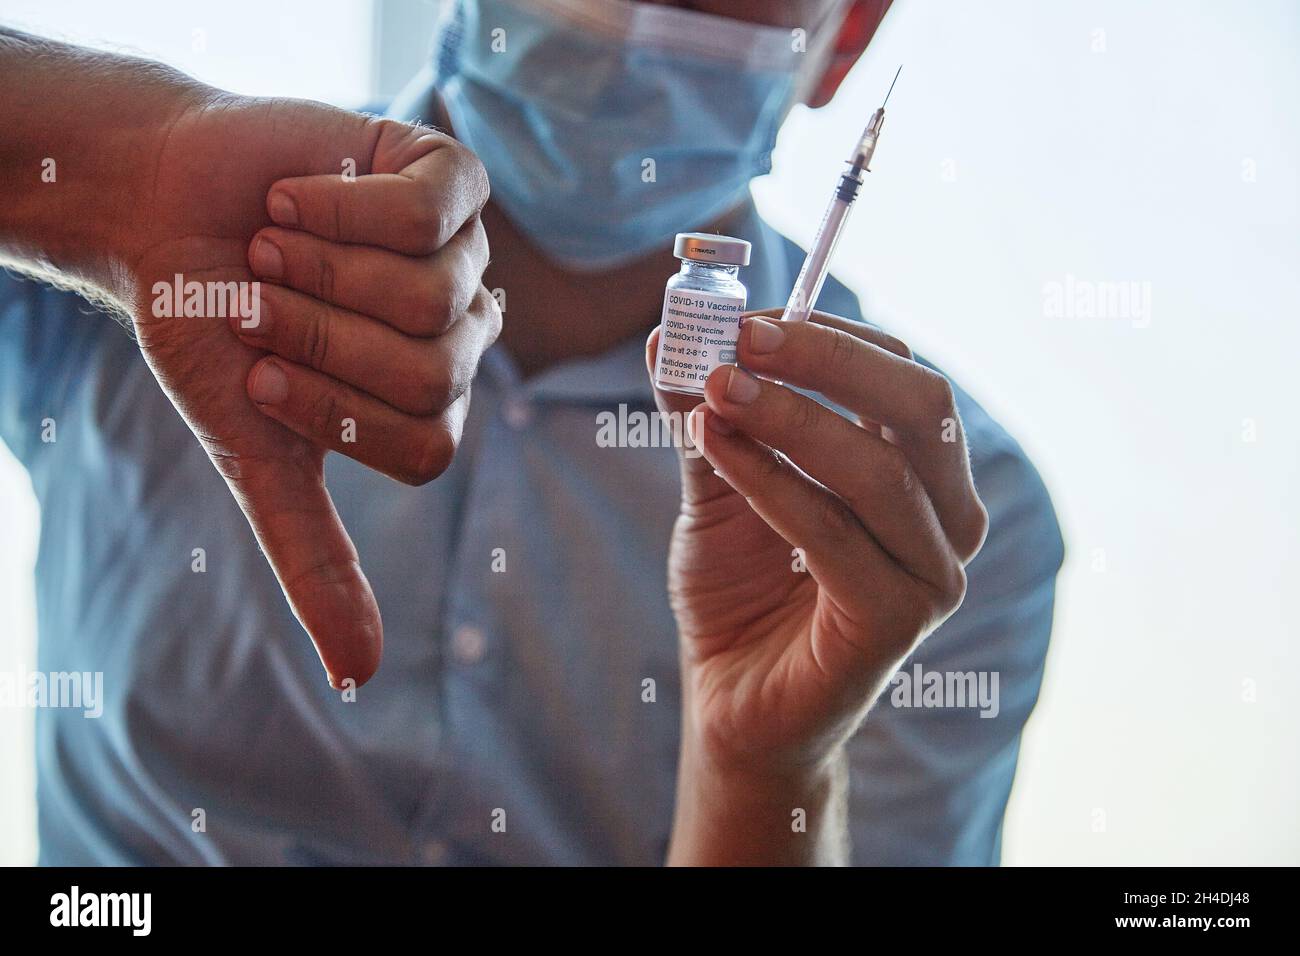 Kiev, Ucraina - 26 giugno 2021: Vaccino AstraZeneca. Vaccinazioni durante il coronavirus. Rigetto preventivo della medicina, rifiuto del vaccino. Flaconi di vaccino efficaci nella prevenzione delle infezioni da Covid-19 Foto Stock